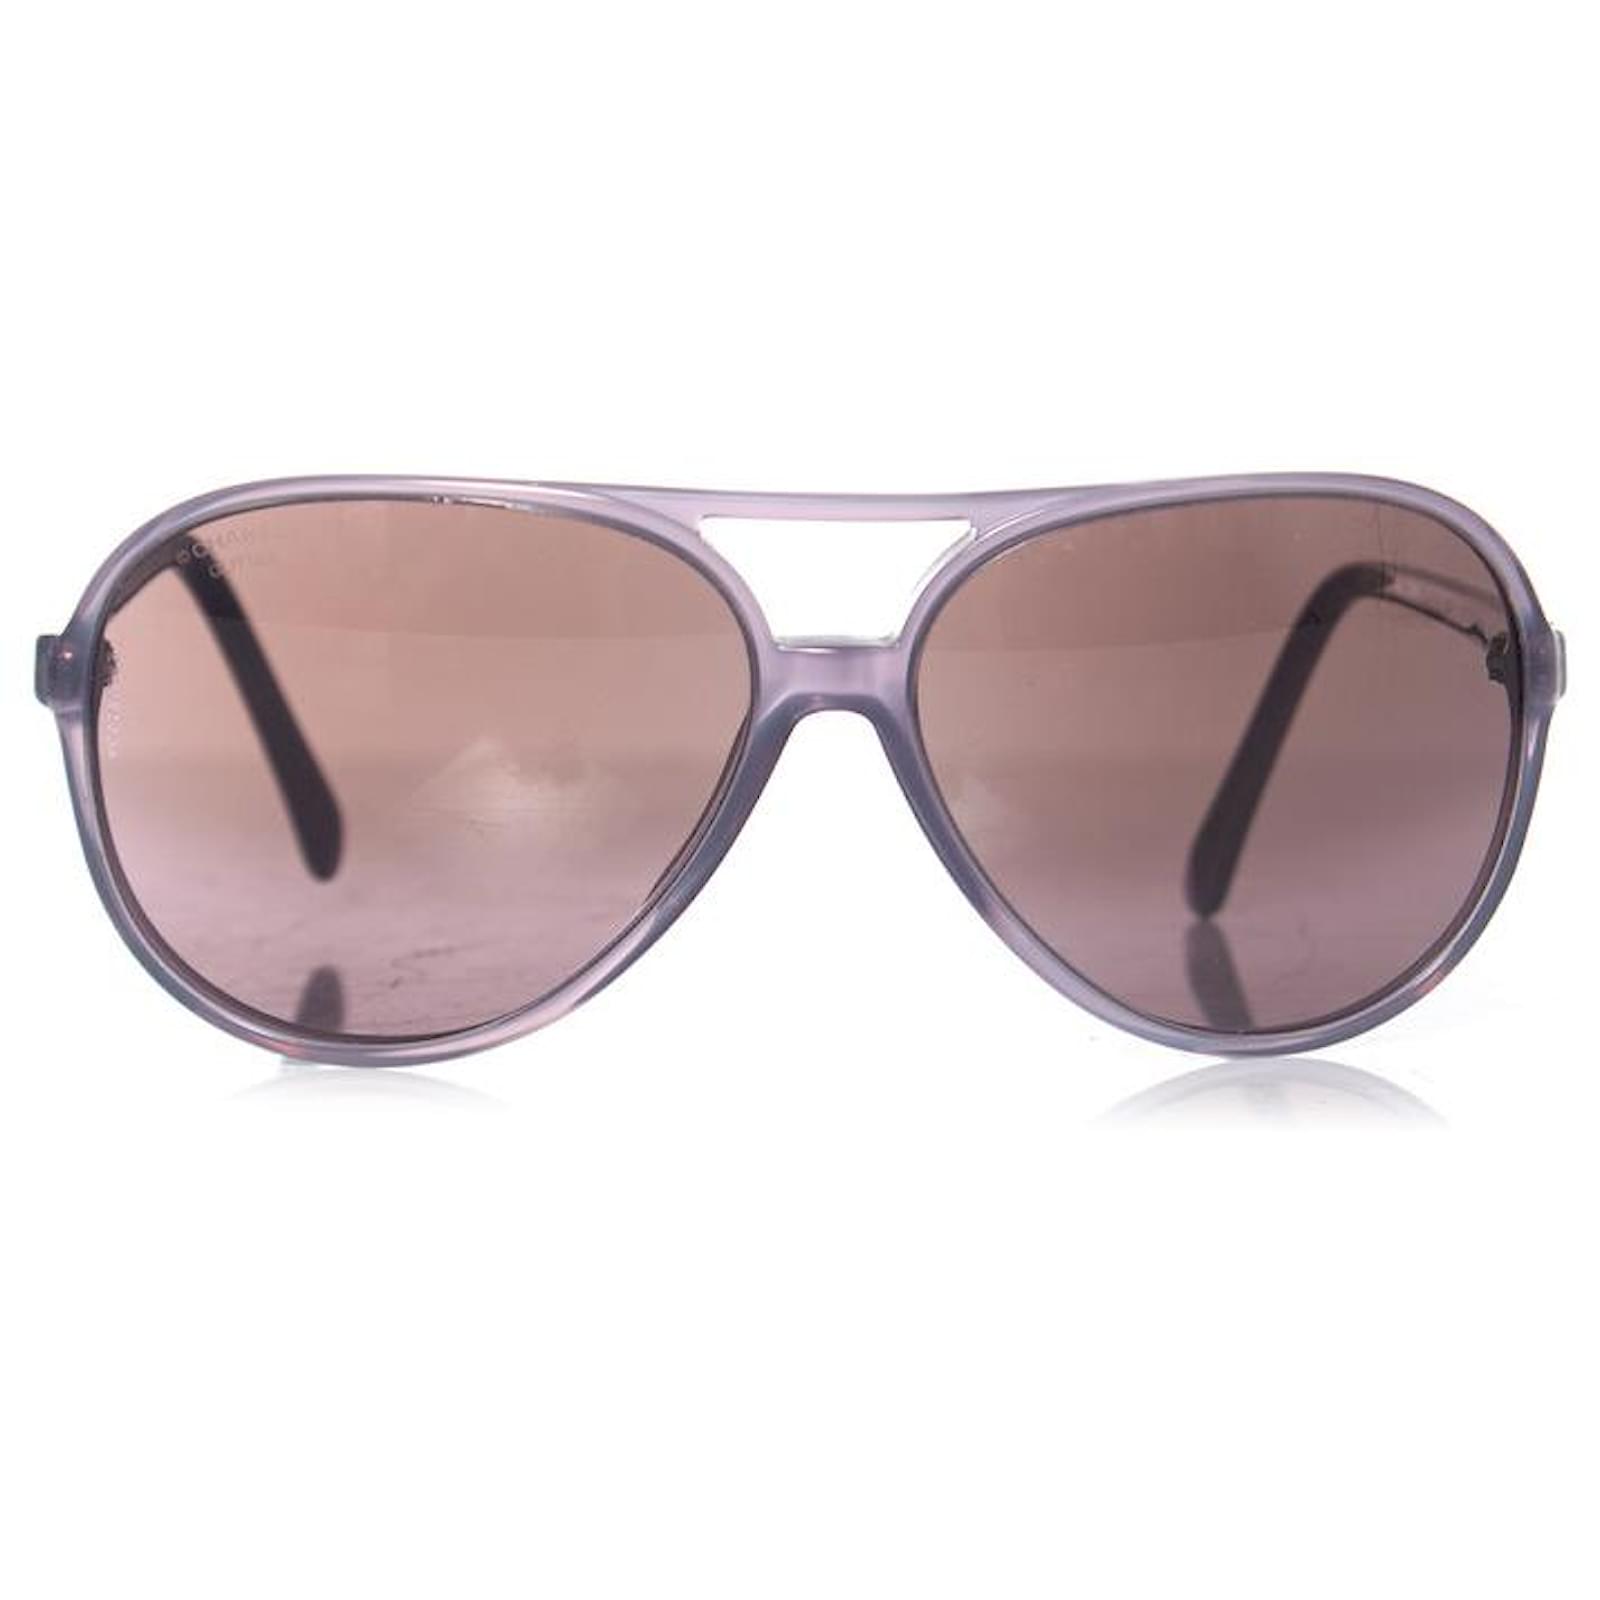 Chanel, Aviator sunglasses in purple